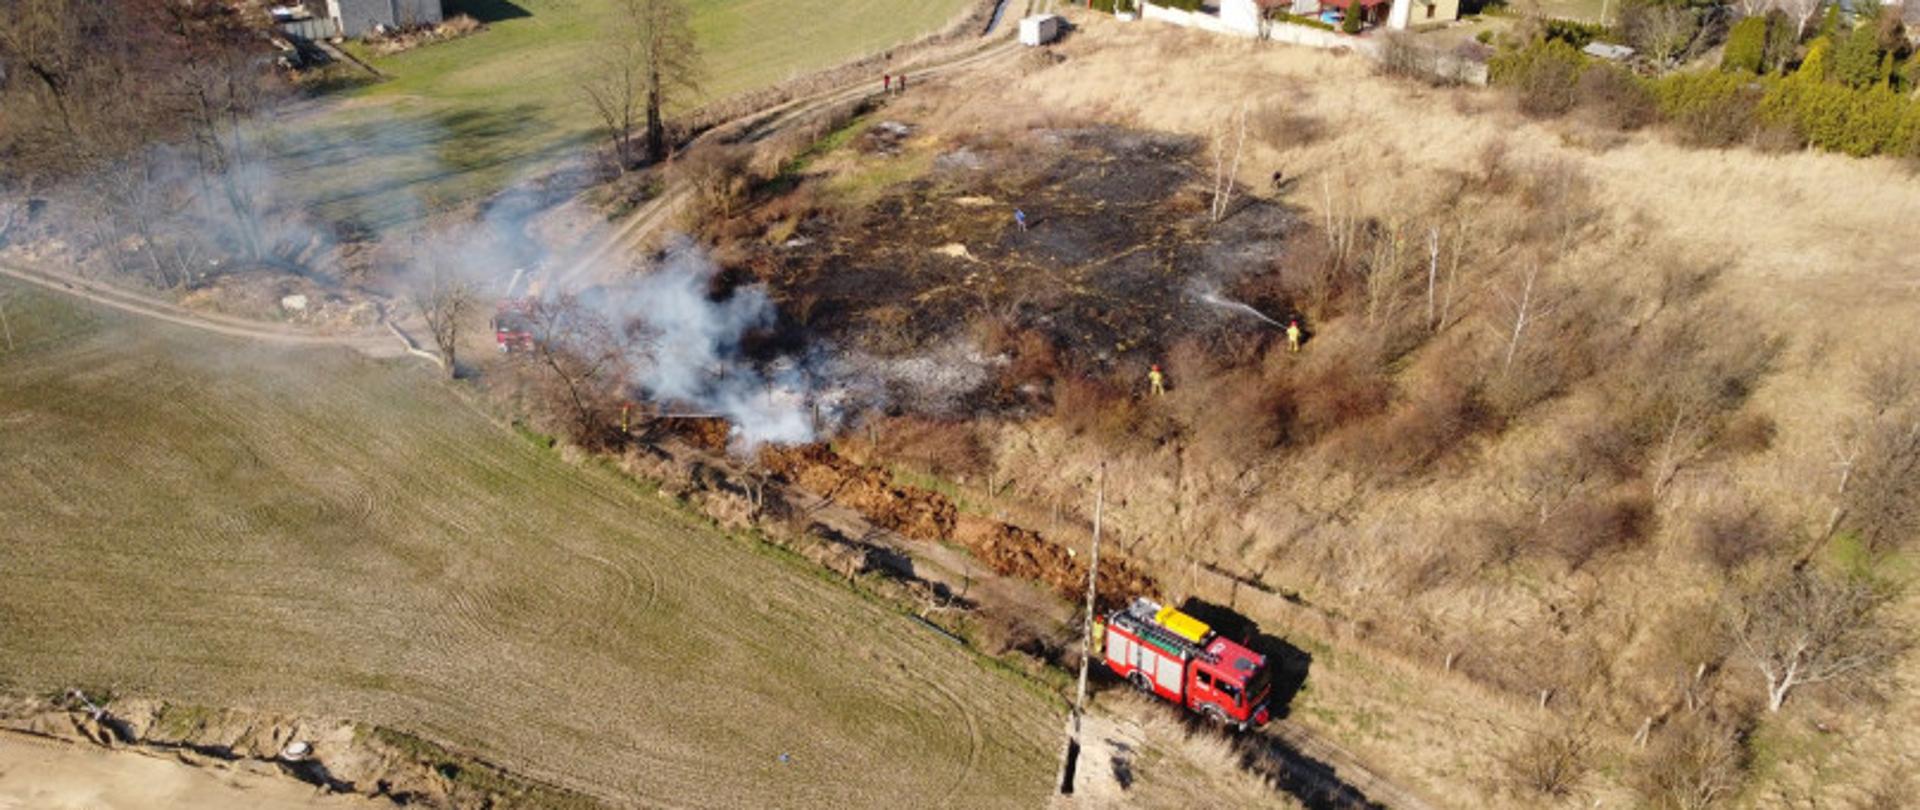 Zdjęcie przedstawia wypalone pozostałości po pożarze trawy i krzewów.